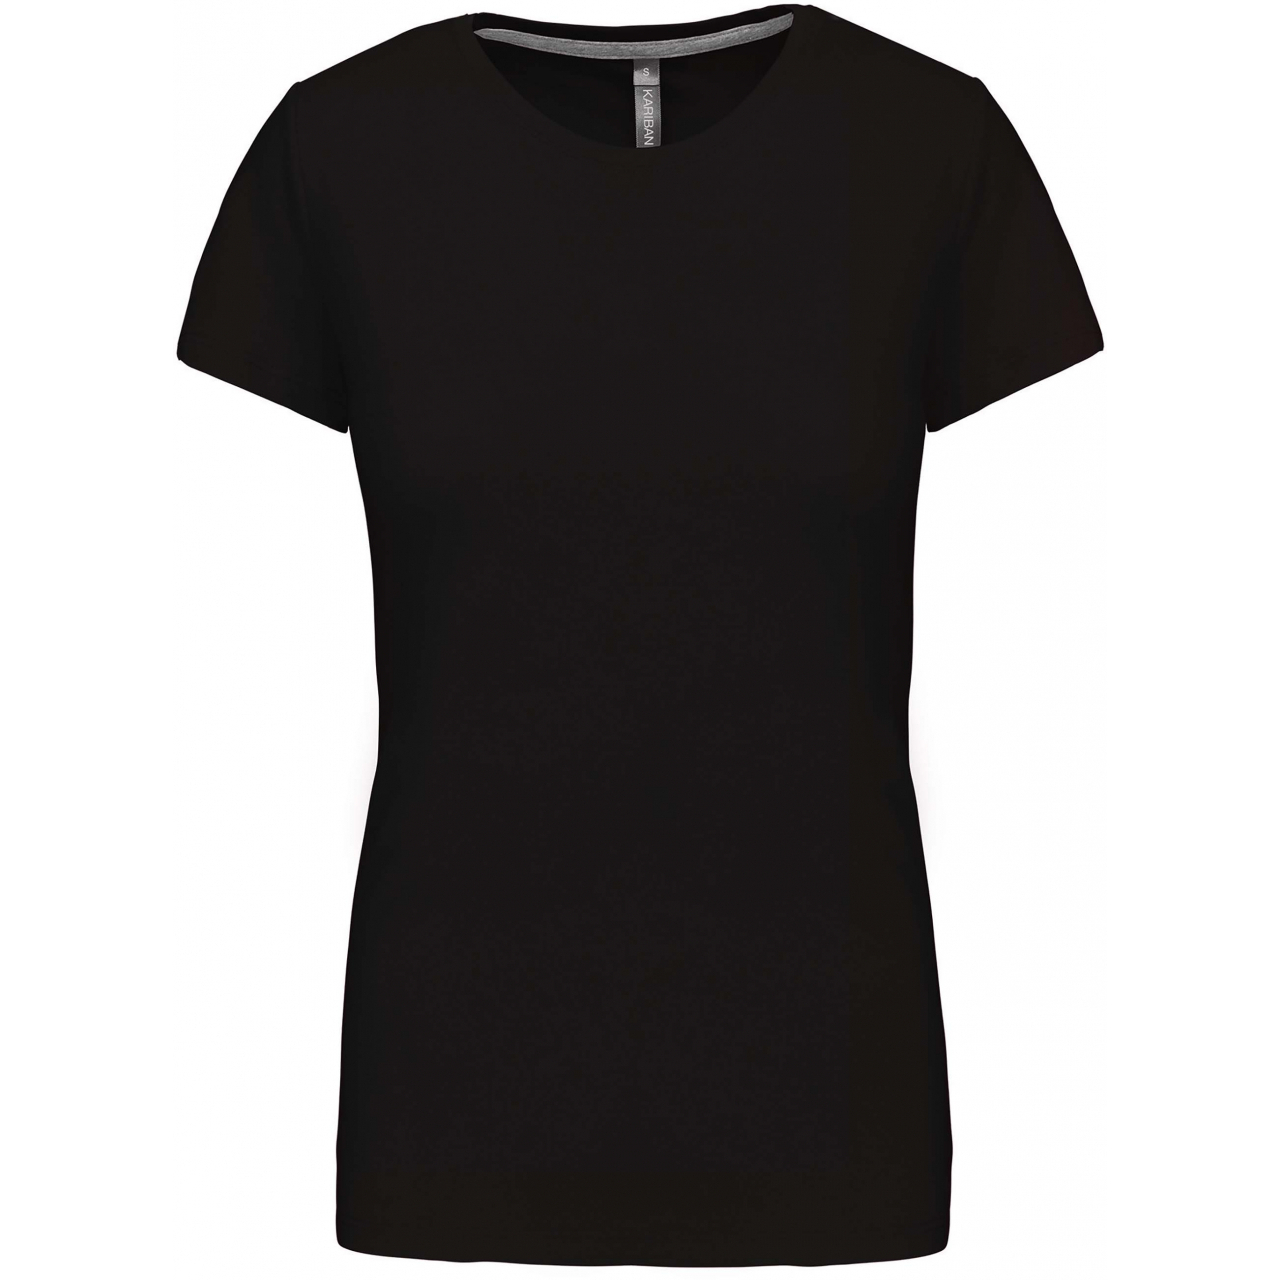 Dámské tričko Kariban s krátkým rukávem - černé, M